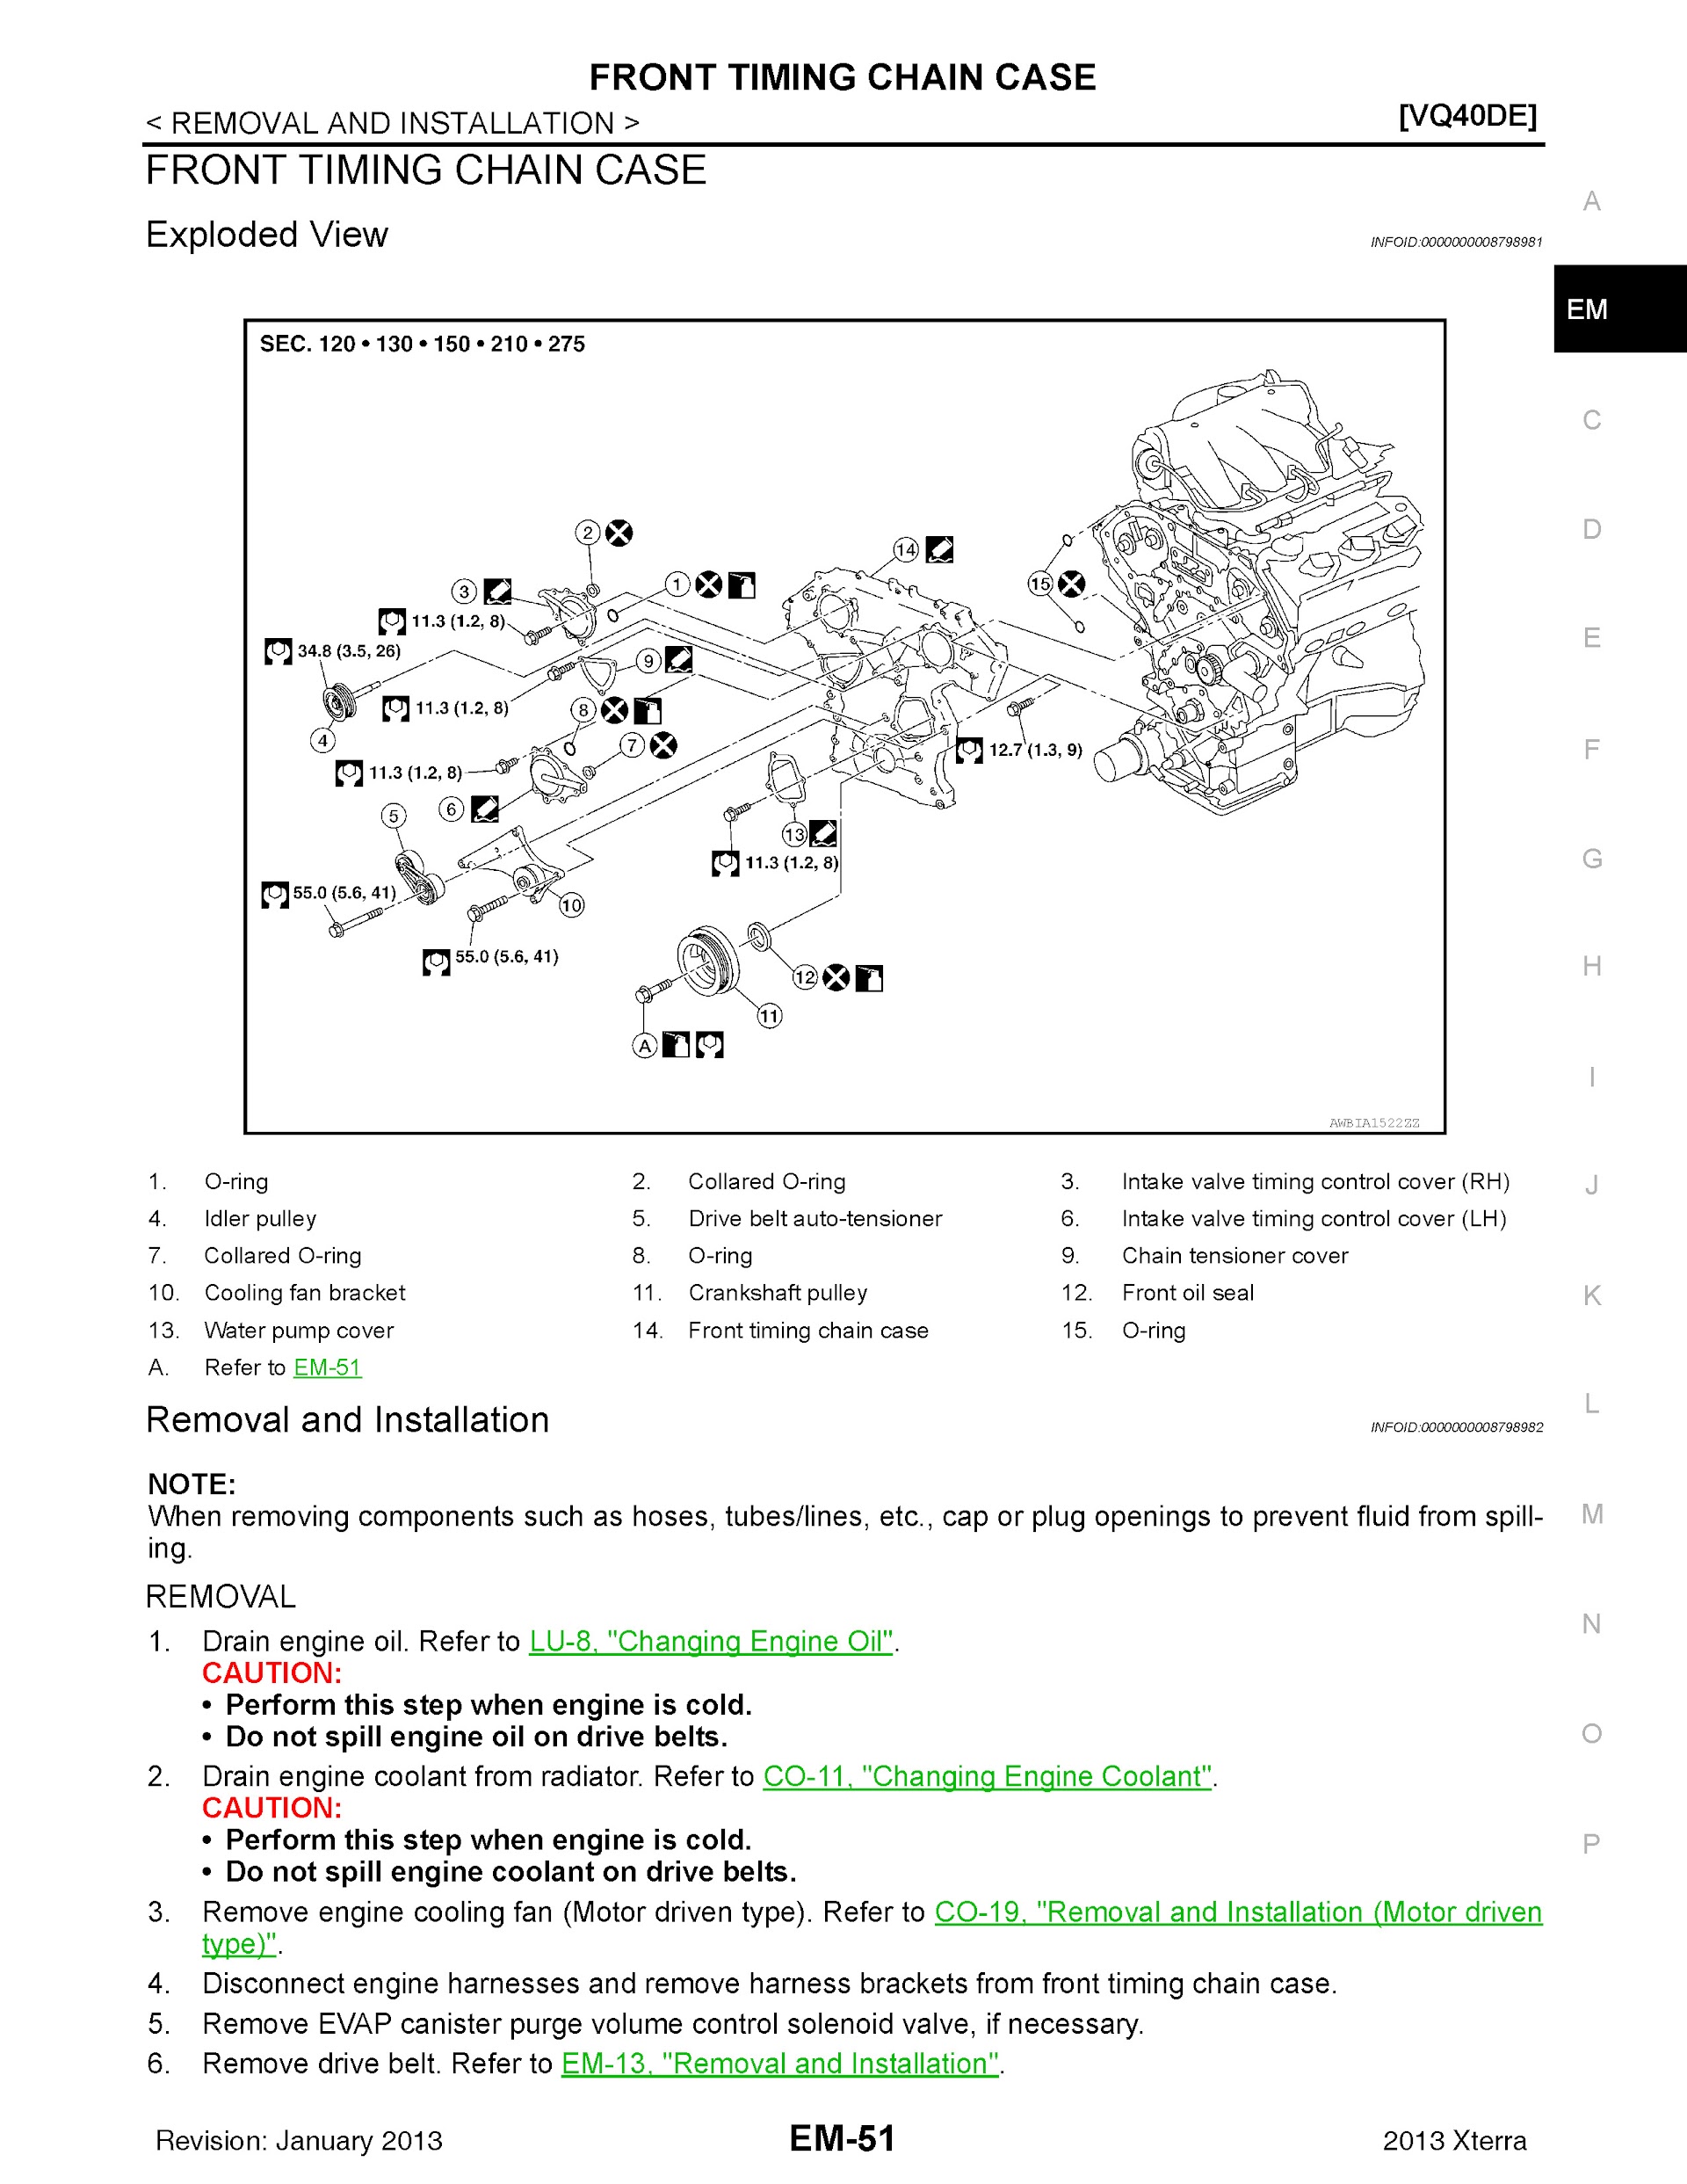 Download 2013 Nissan XTerra Repair Manual.